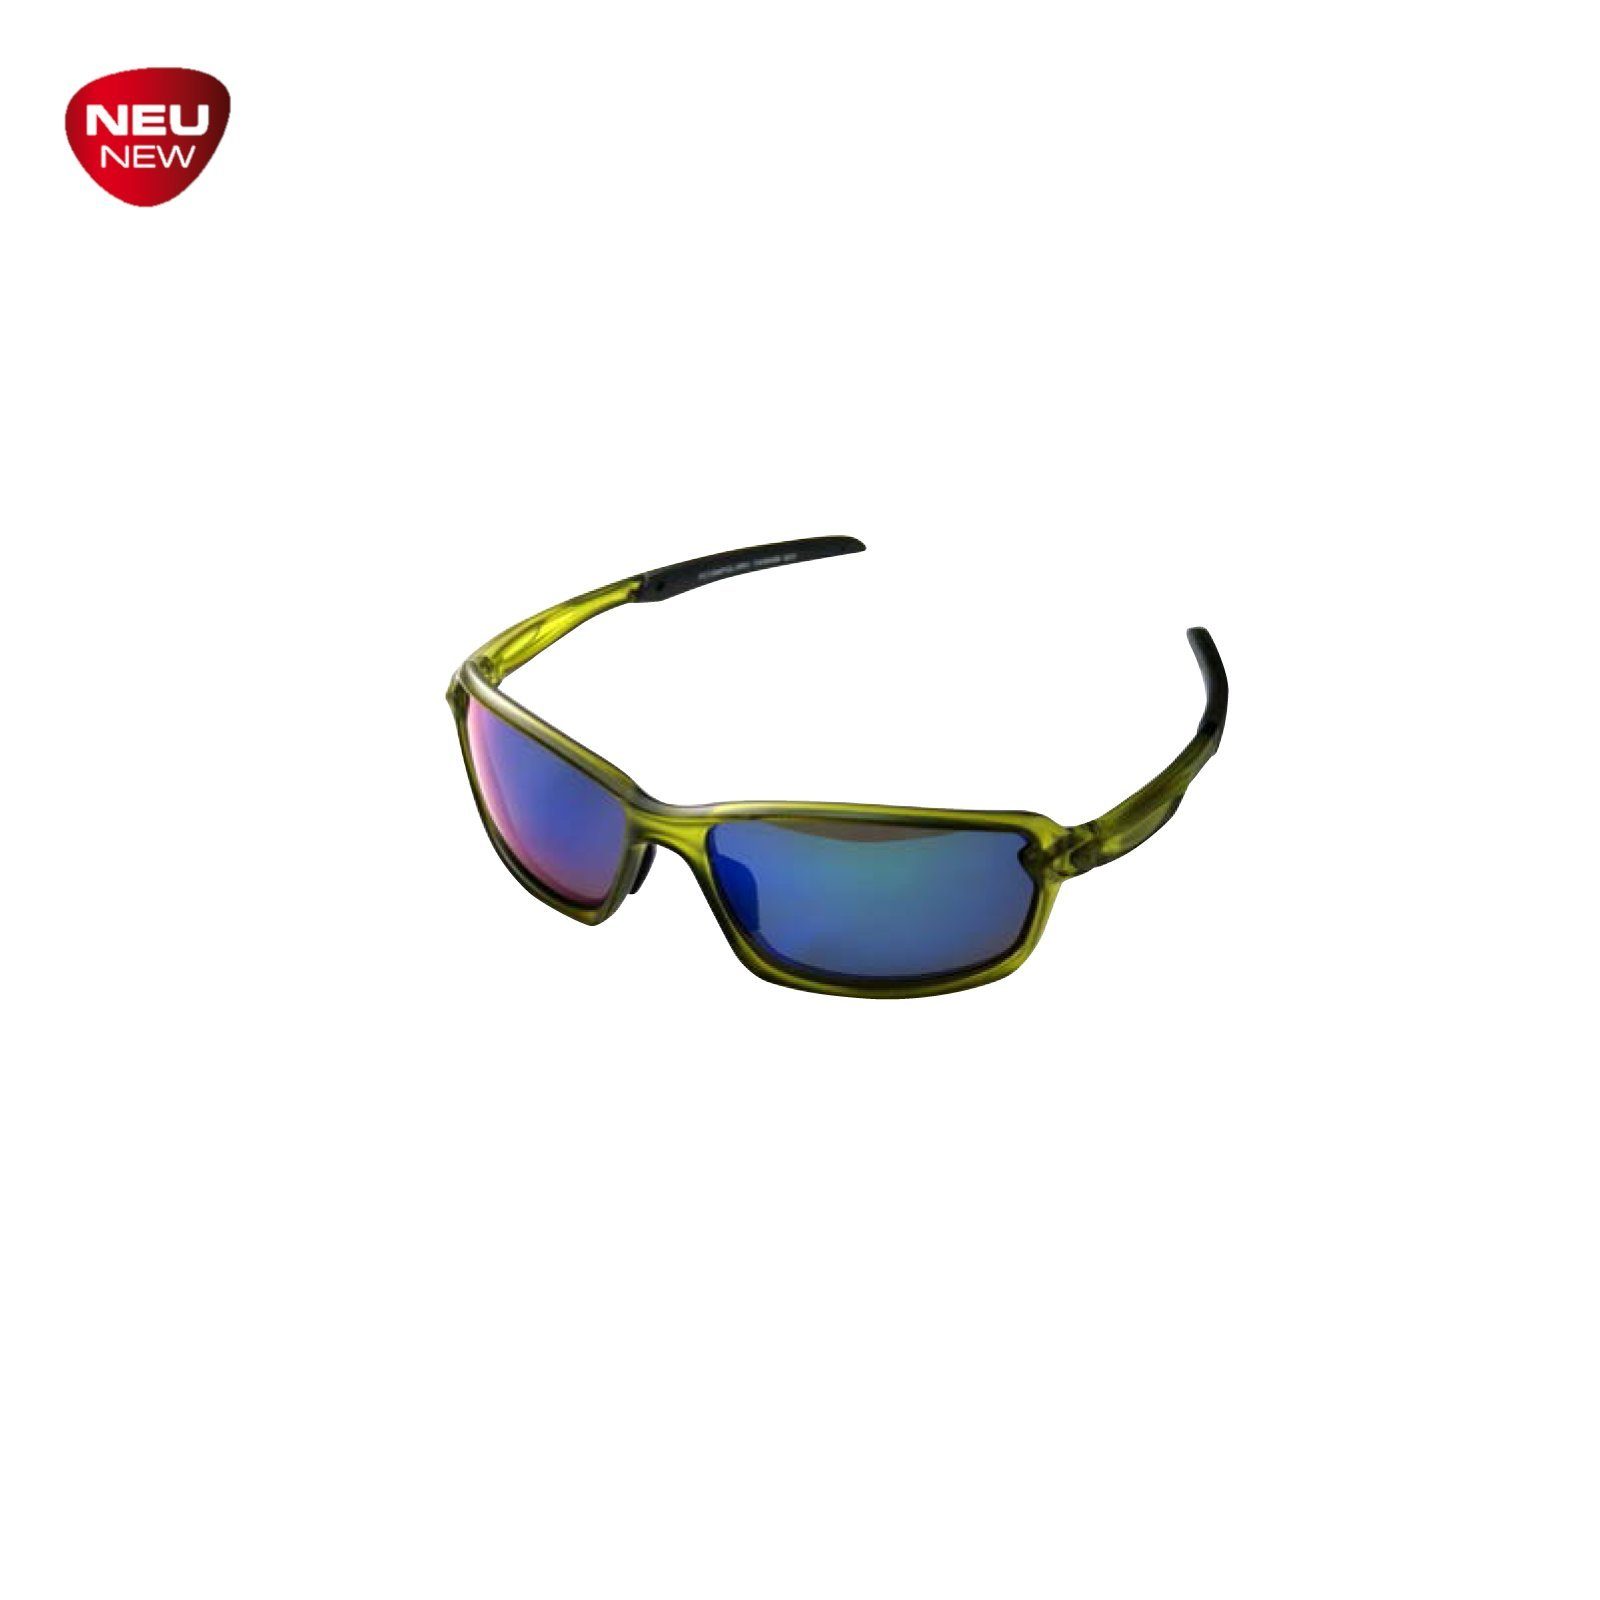 Behr Sonnenbrille TRENDEX Polarisationsbrille CIGATOO UV-400 Schutz UV-400 qualität. Brille Sonnenbrille Schutz Spitzen- Mit